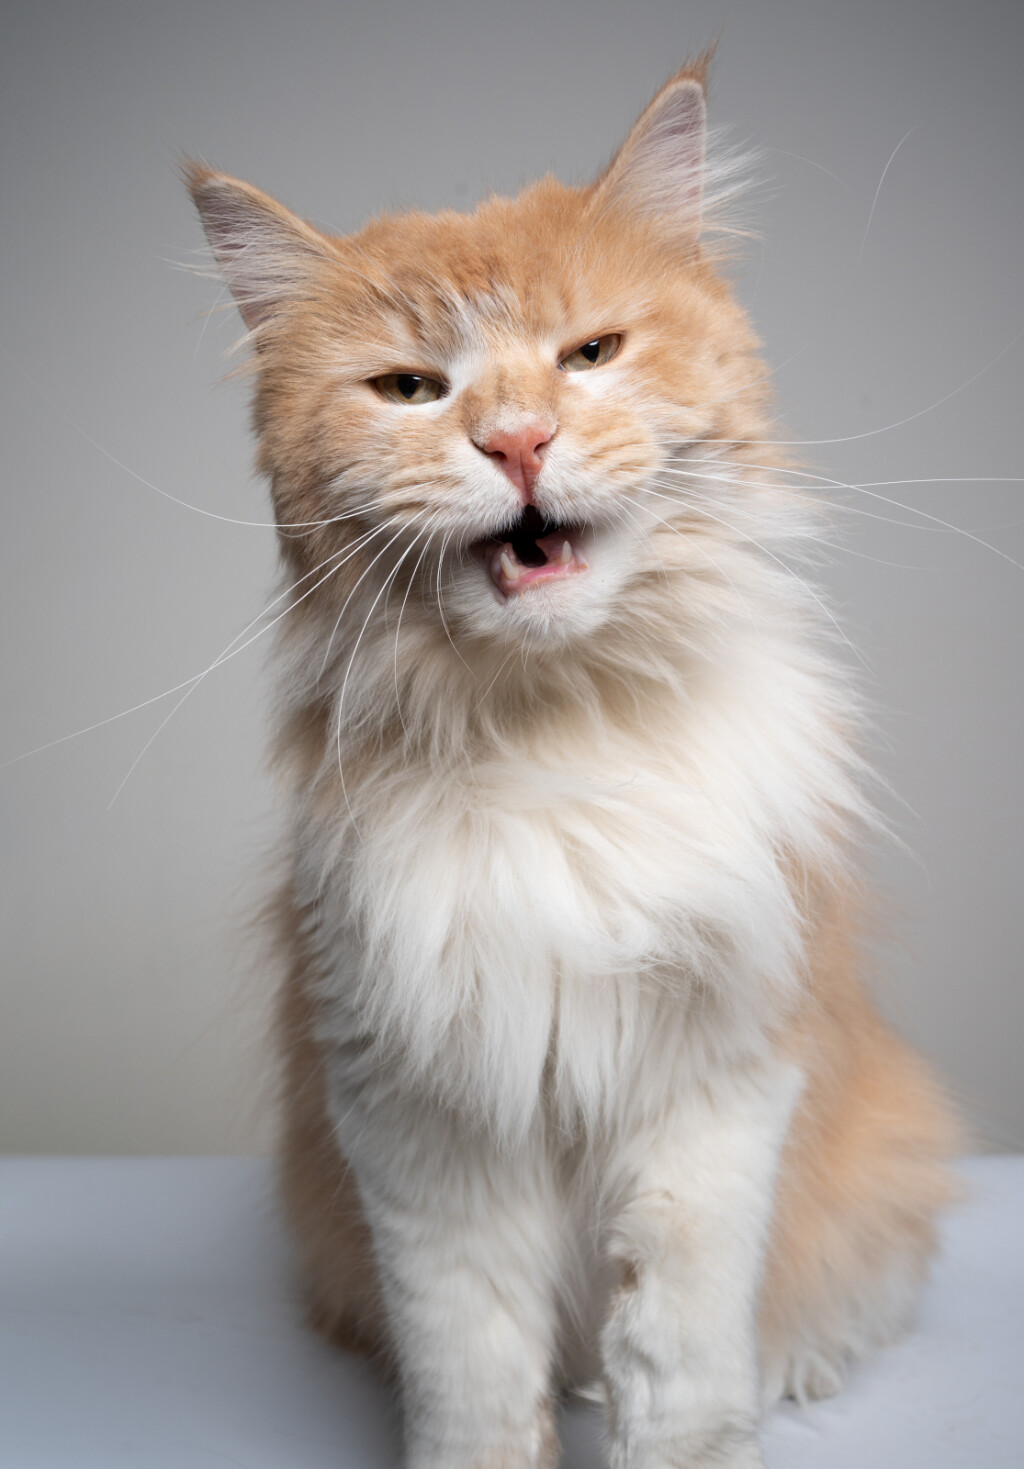 Kod flehmenovog odgovora mačka će obično držati usta otvorena